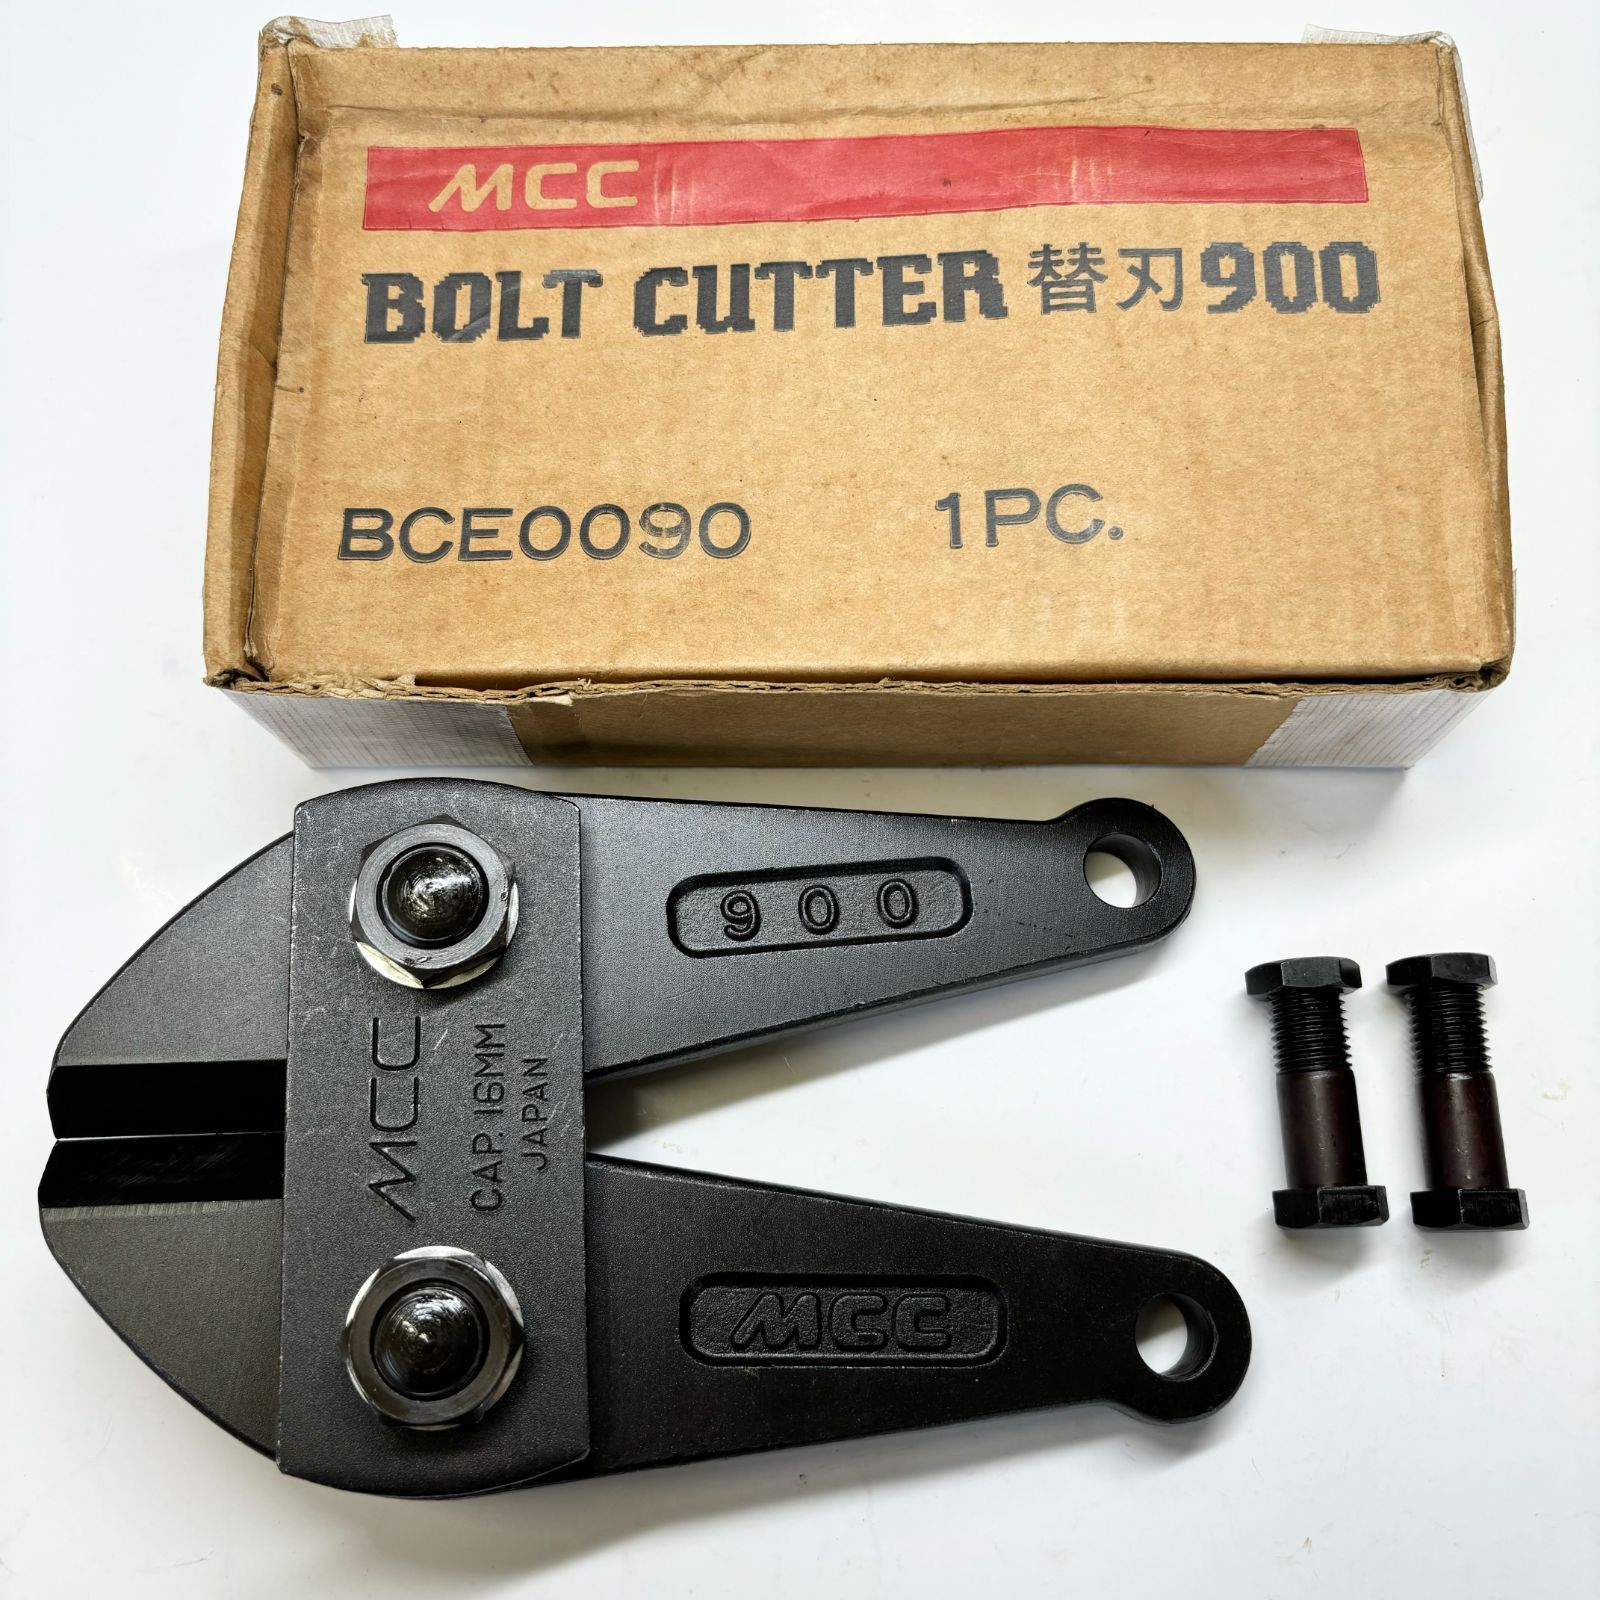 MCC ボルトクリッパー 替刃 900 BCE0090 ボルトカッター/切断工具